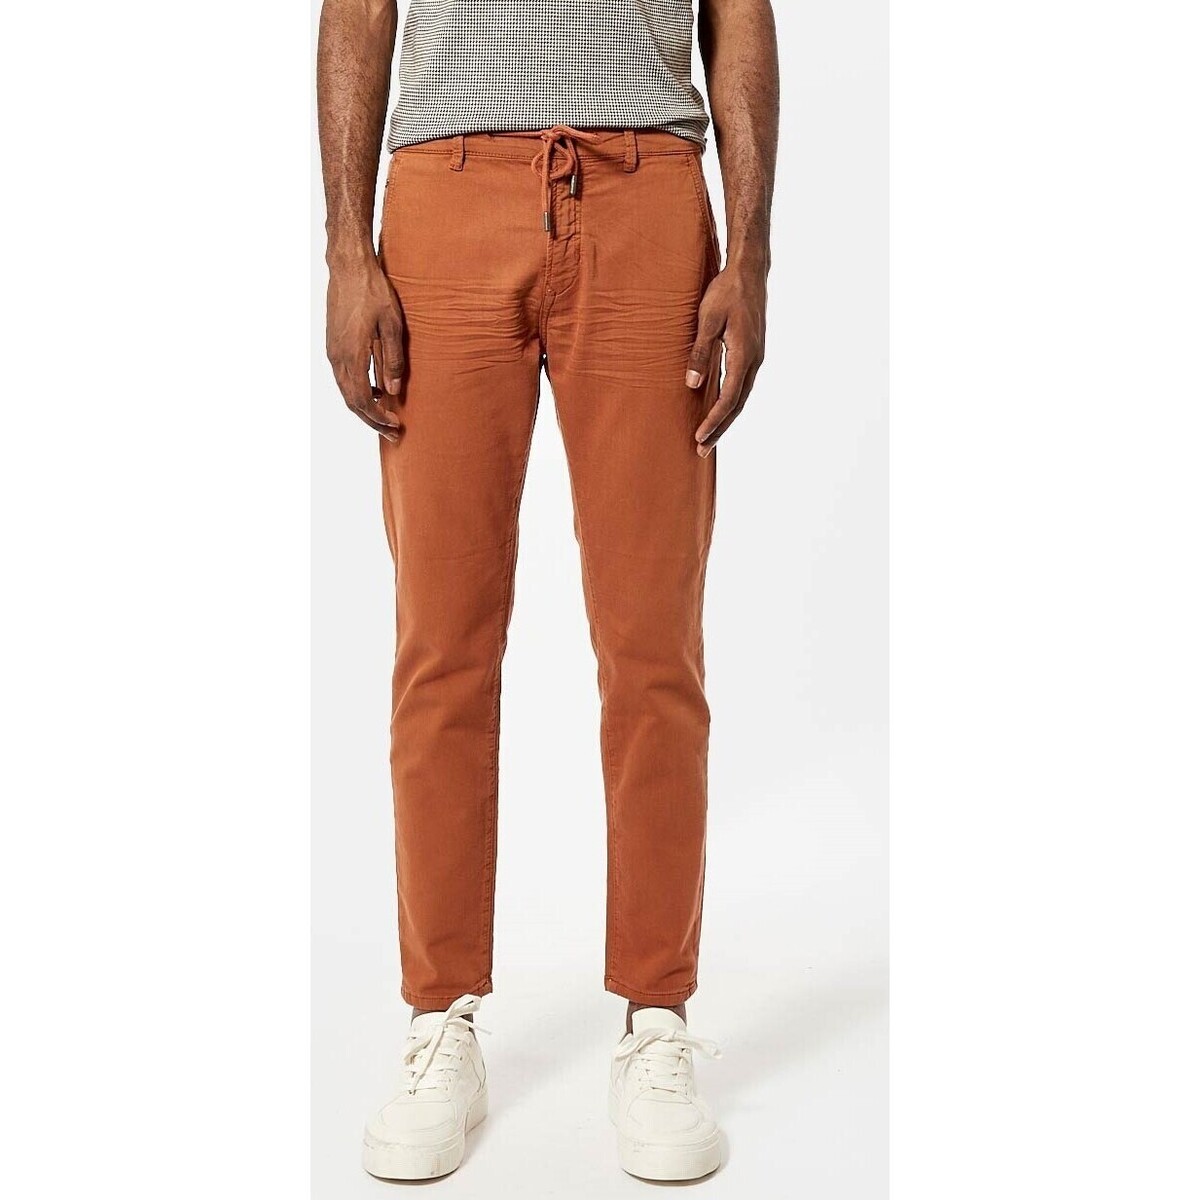 Vêtements Homme Pantalons Kaporal - Pantalon - terracotta Orange